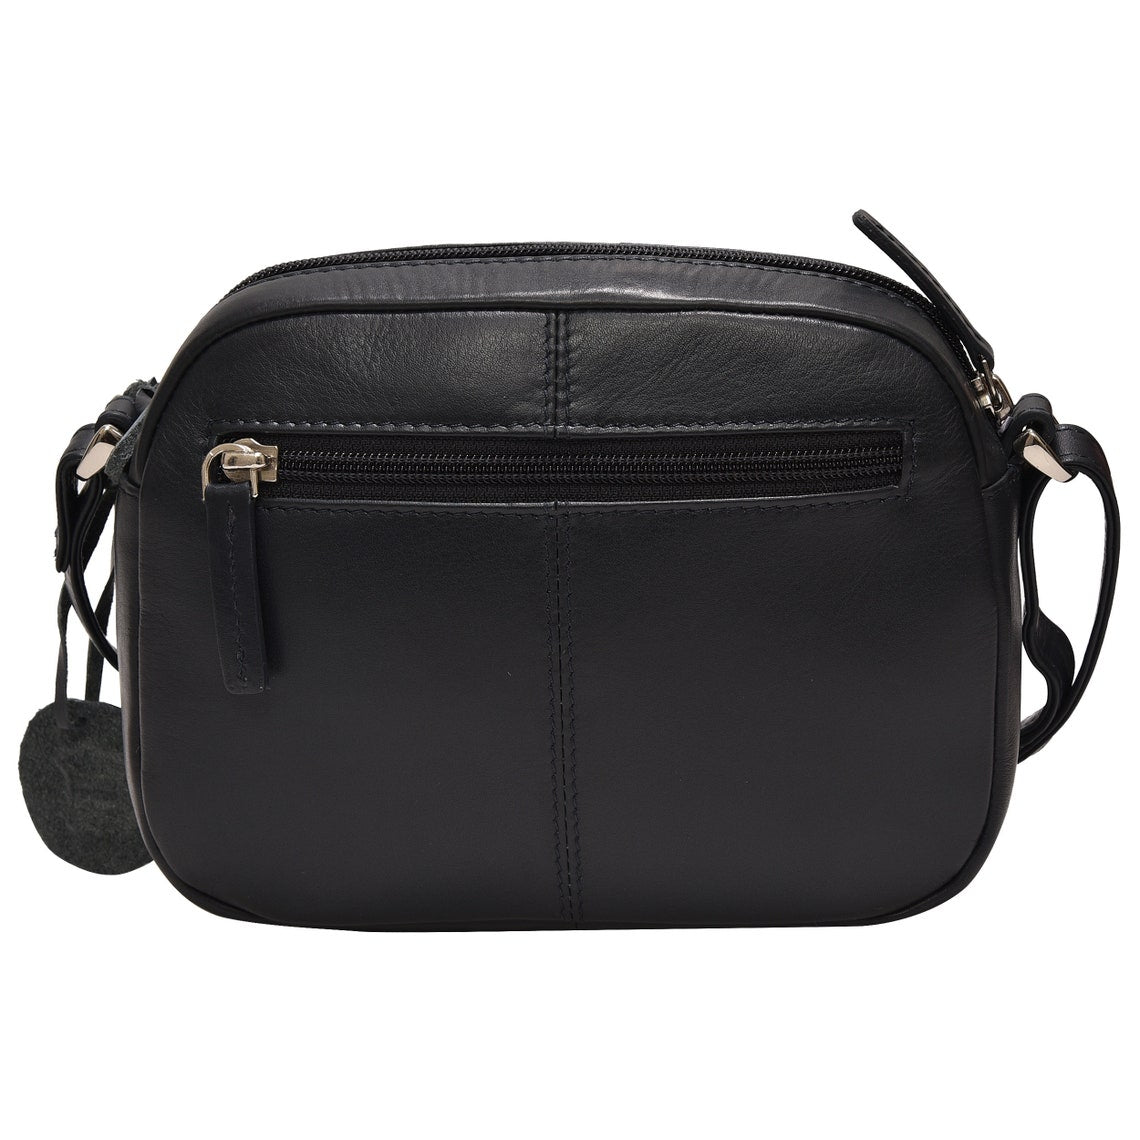 GT-H82: G&T Full-grain Leather Shopper, Shoulder Bag, Handbag with Adj